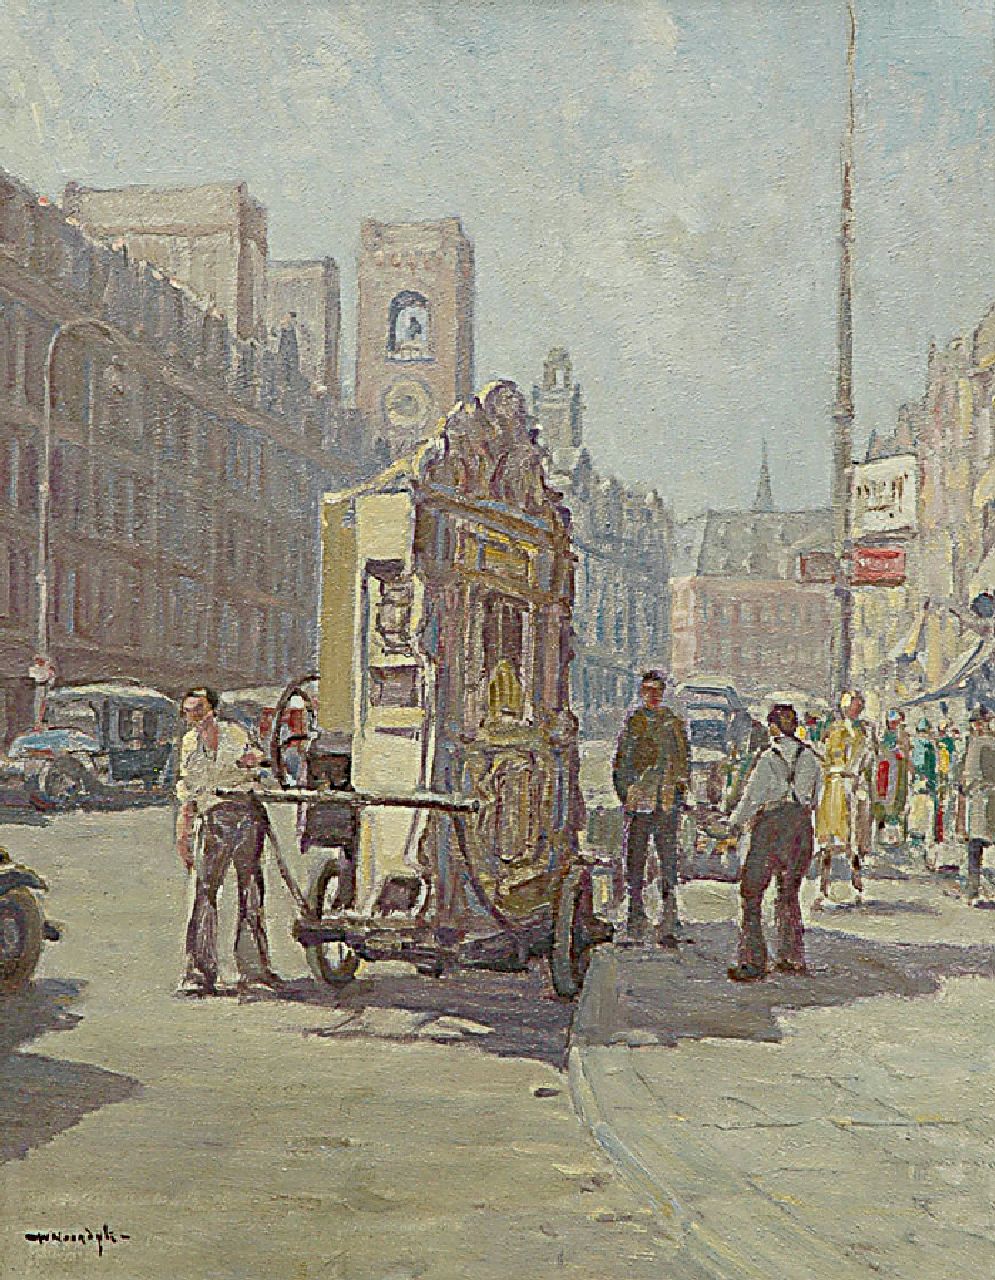 Noordijk W.F.  | 'Willem' Frederik Noordijk, Orgelman op het Amsterdamse Damrak, olieverf op doek 50,3 x 40,0 cm, gesigneerd linksonder